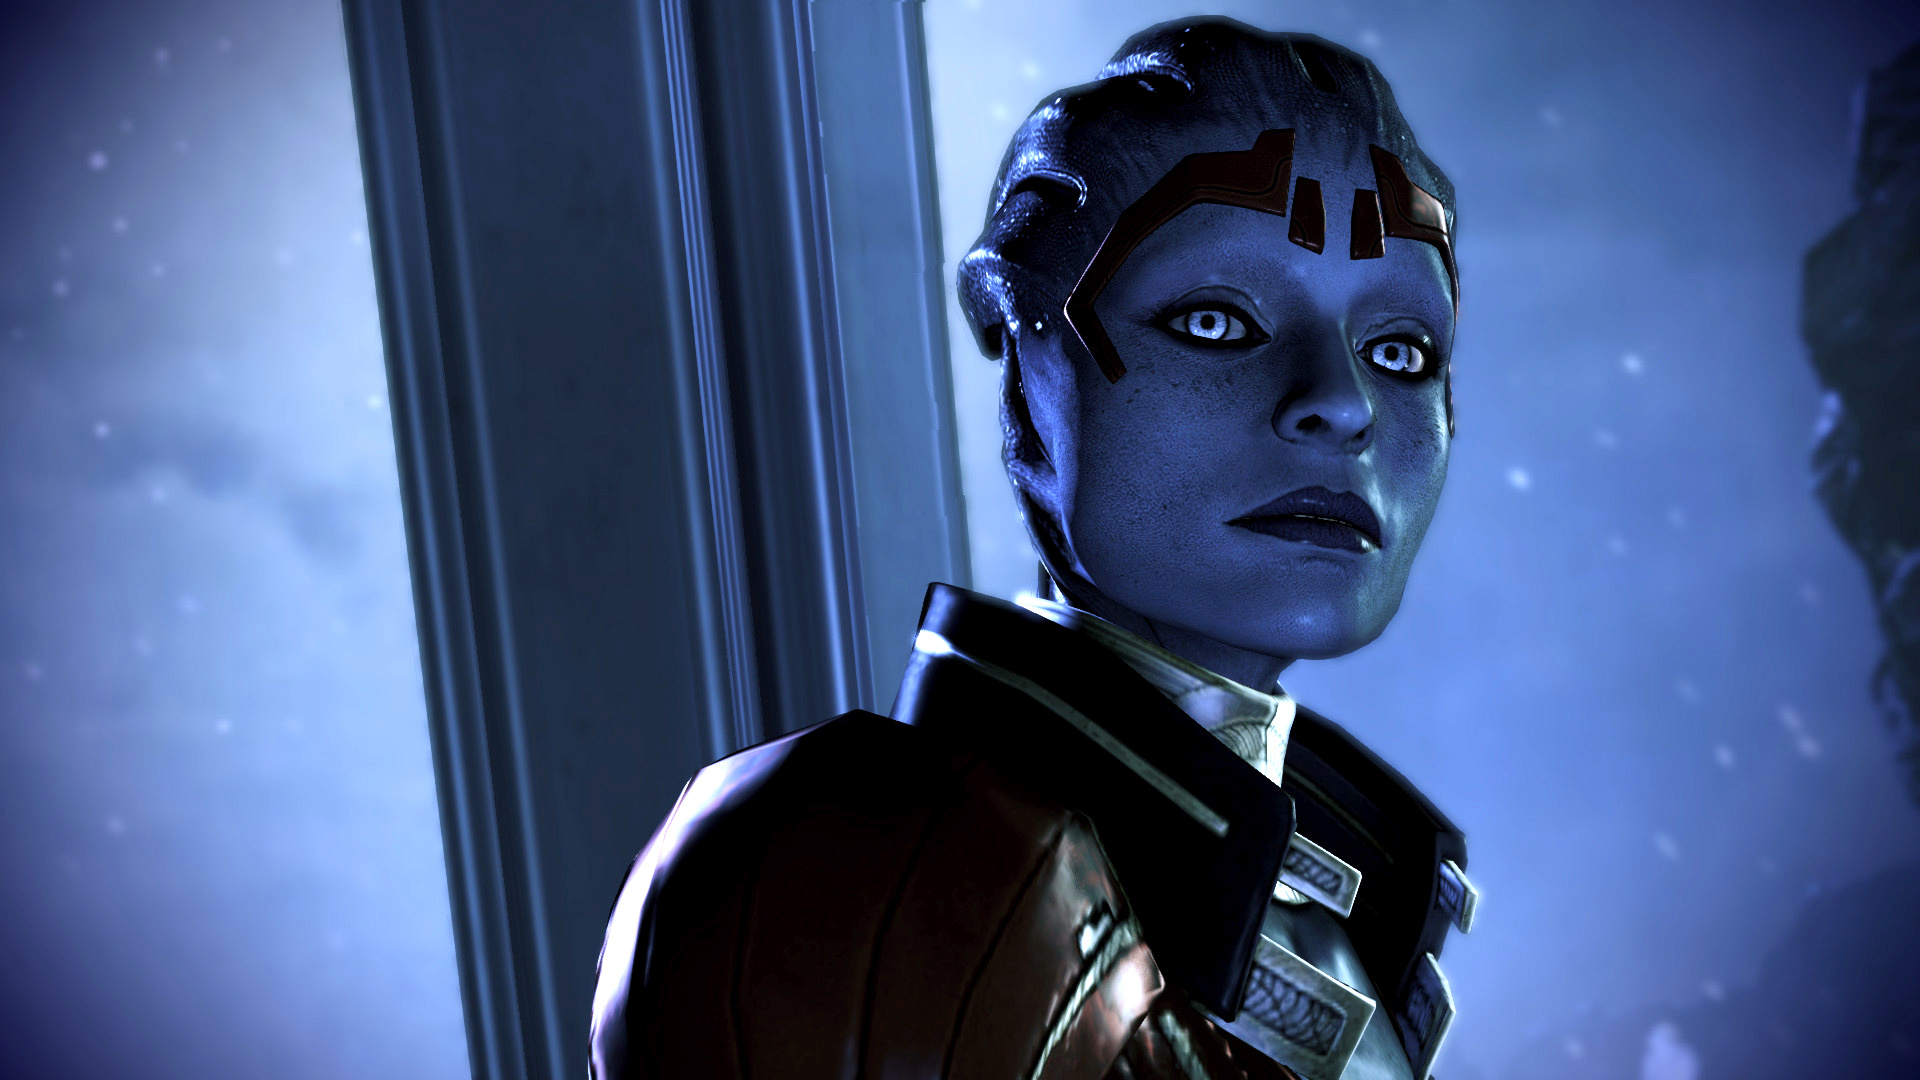 Mass Effect 2: Kasumi, Samara Mass Effect, HD wallpapers, 1920x1080 Full HD Desktop